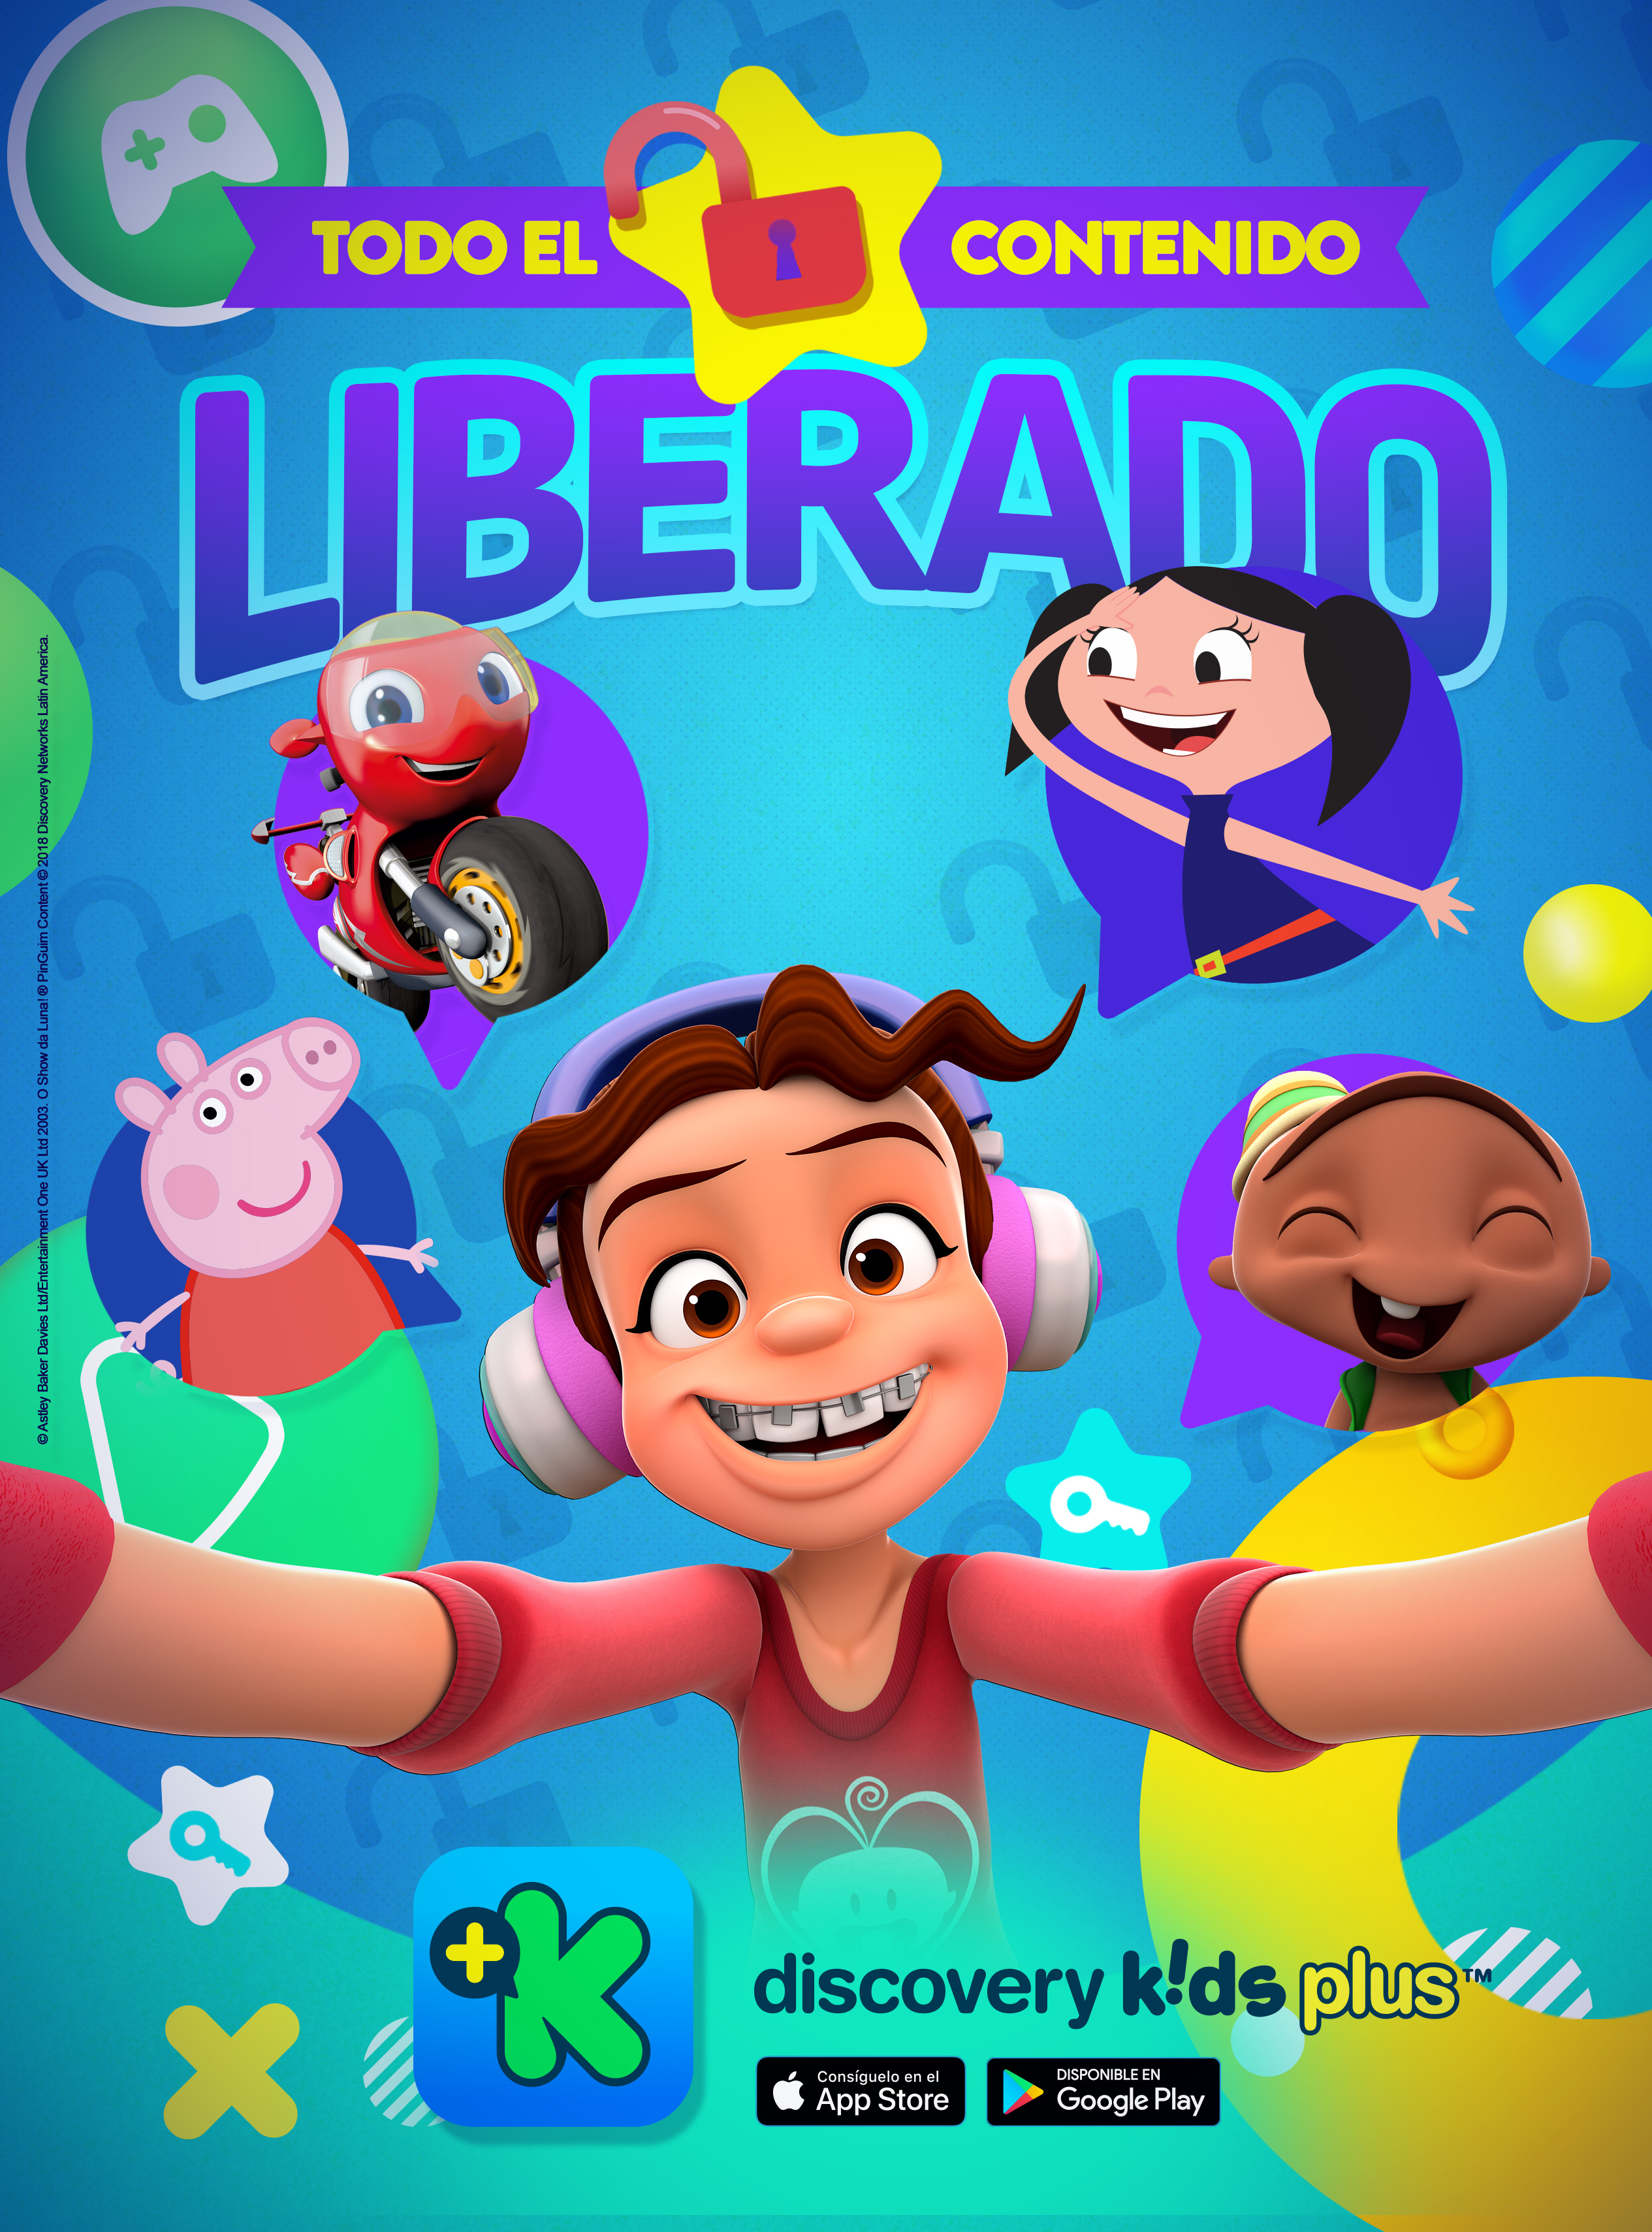 Juegos y libros de Discovery Kids están disponibles de forma gratuita en Internet